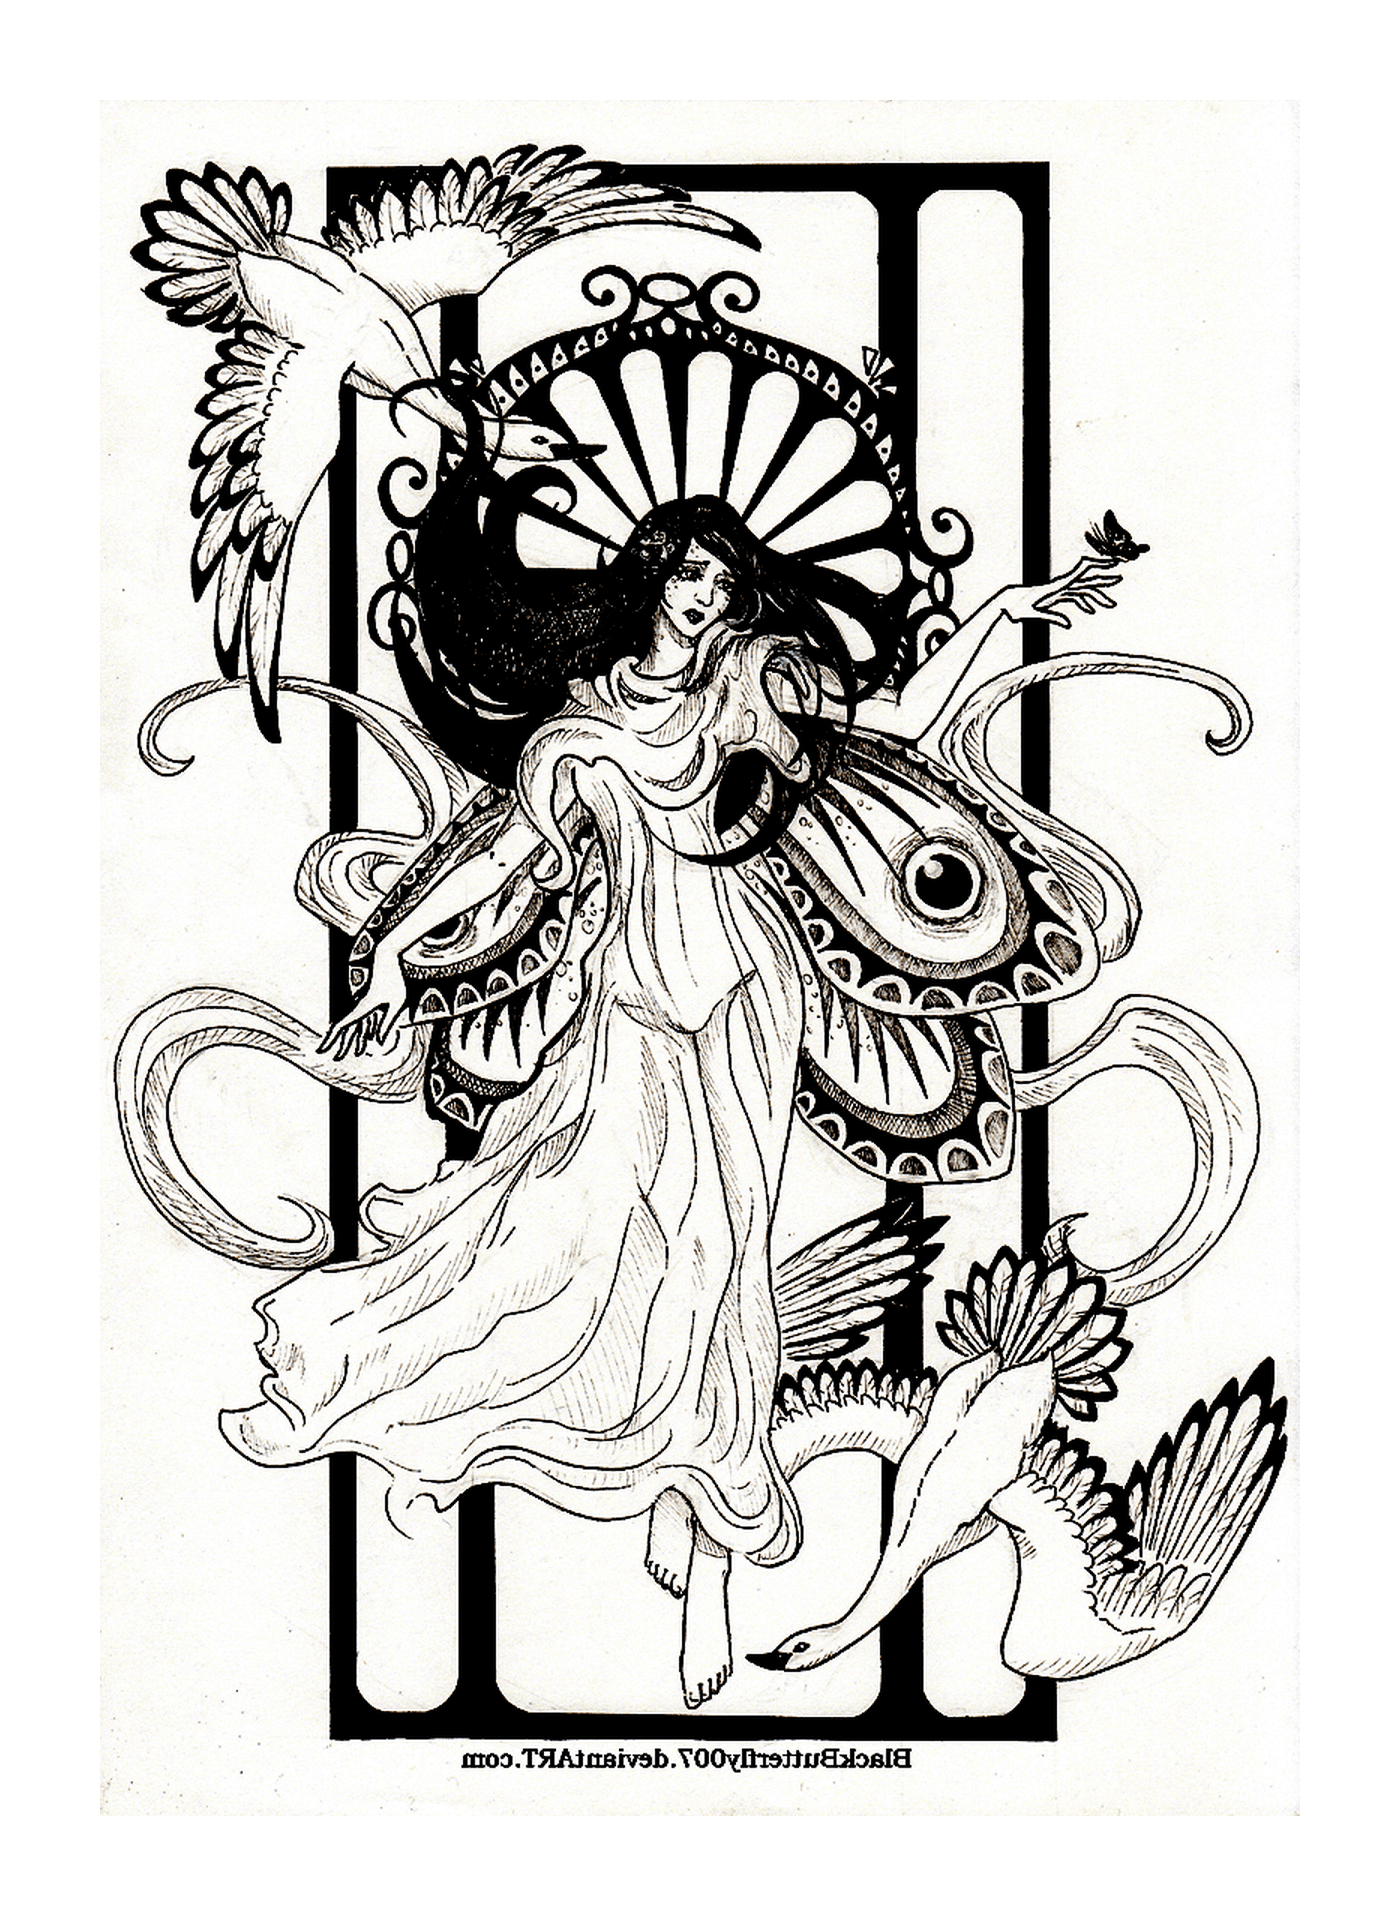   une femme avec des ailes de papillon selon l'inspiration art nouveau 